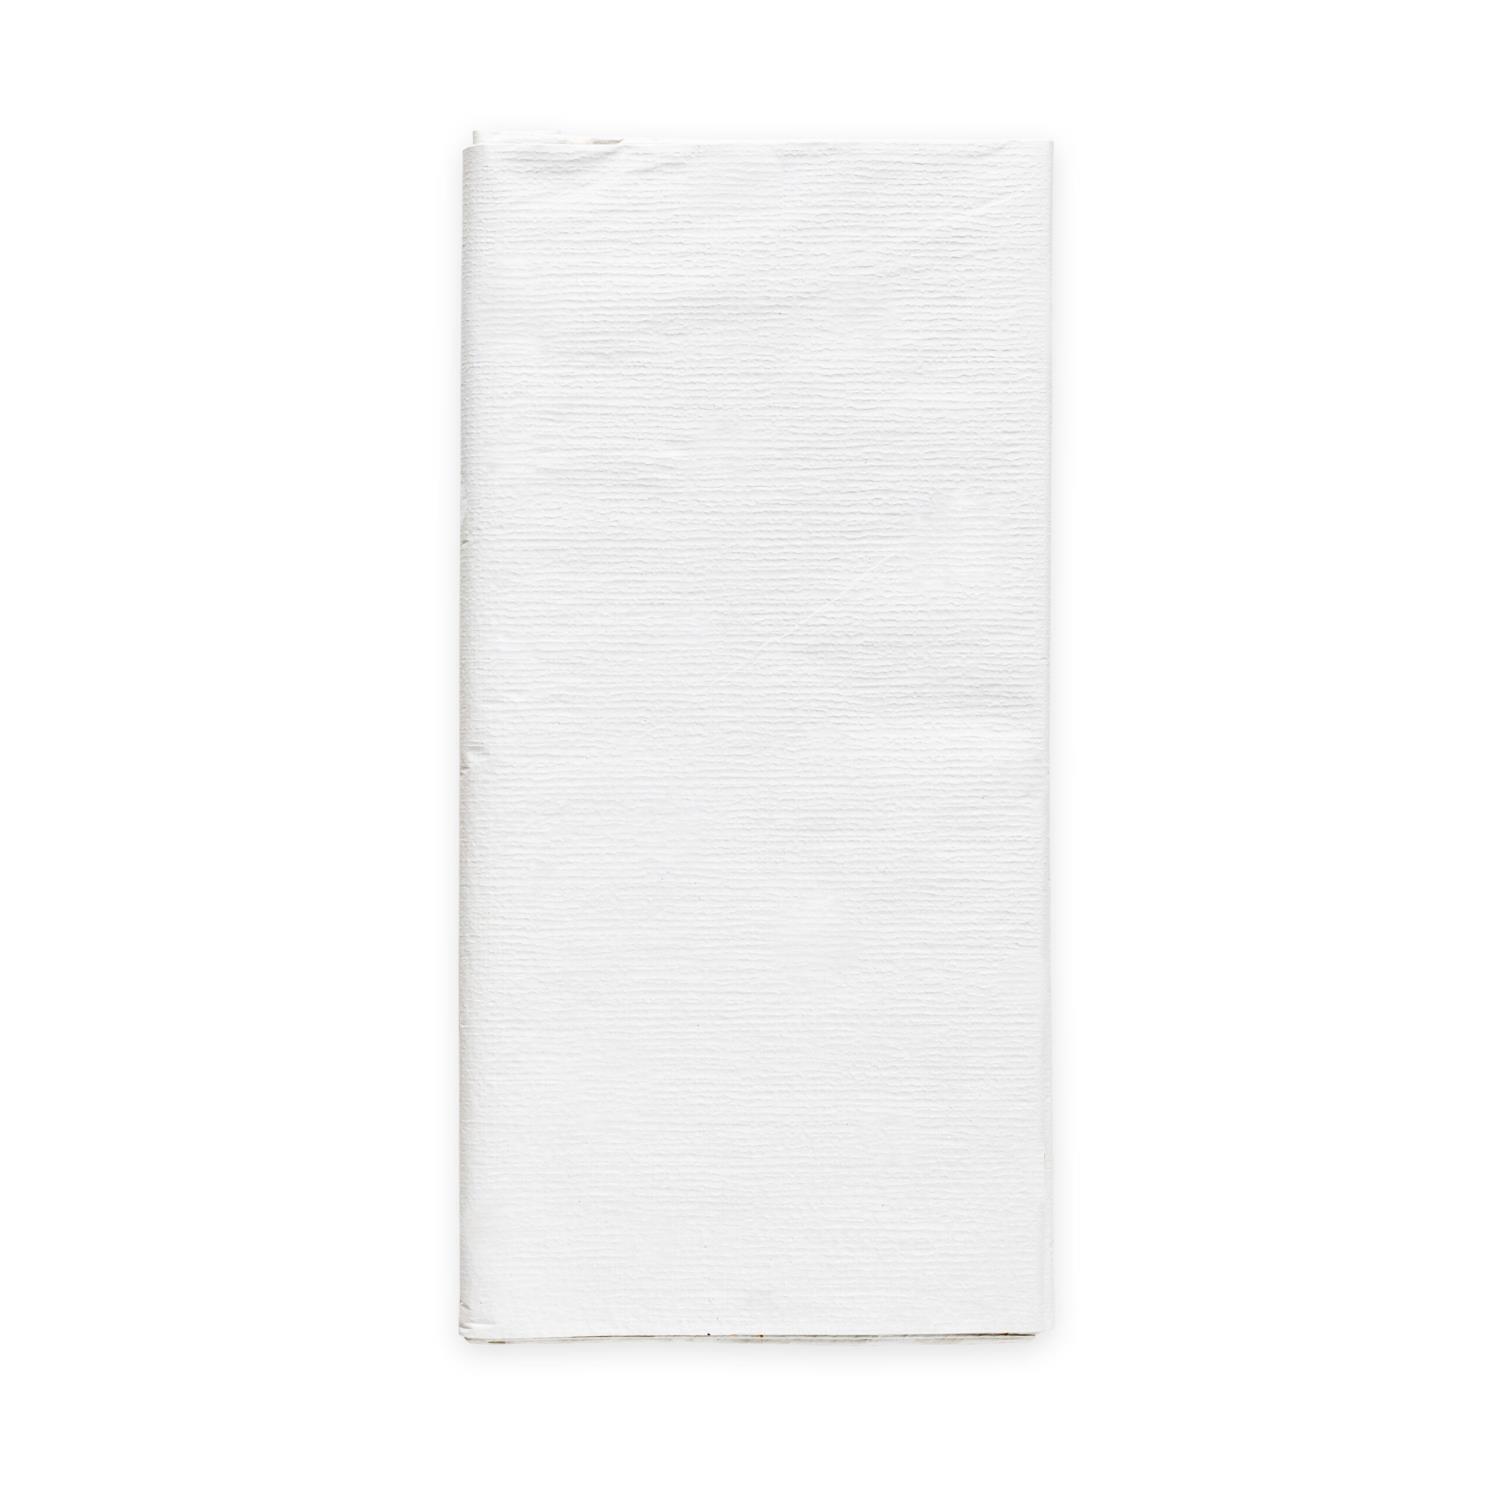 Papirduk hvit 120x180cm